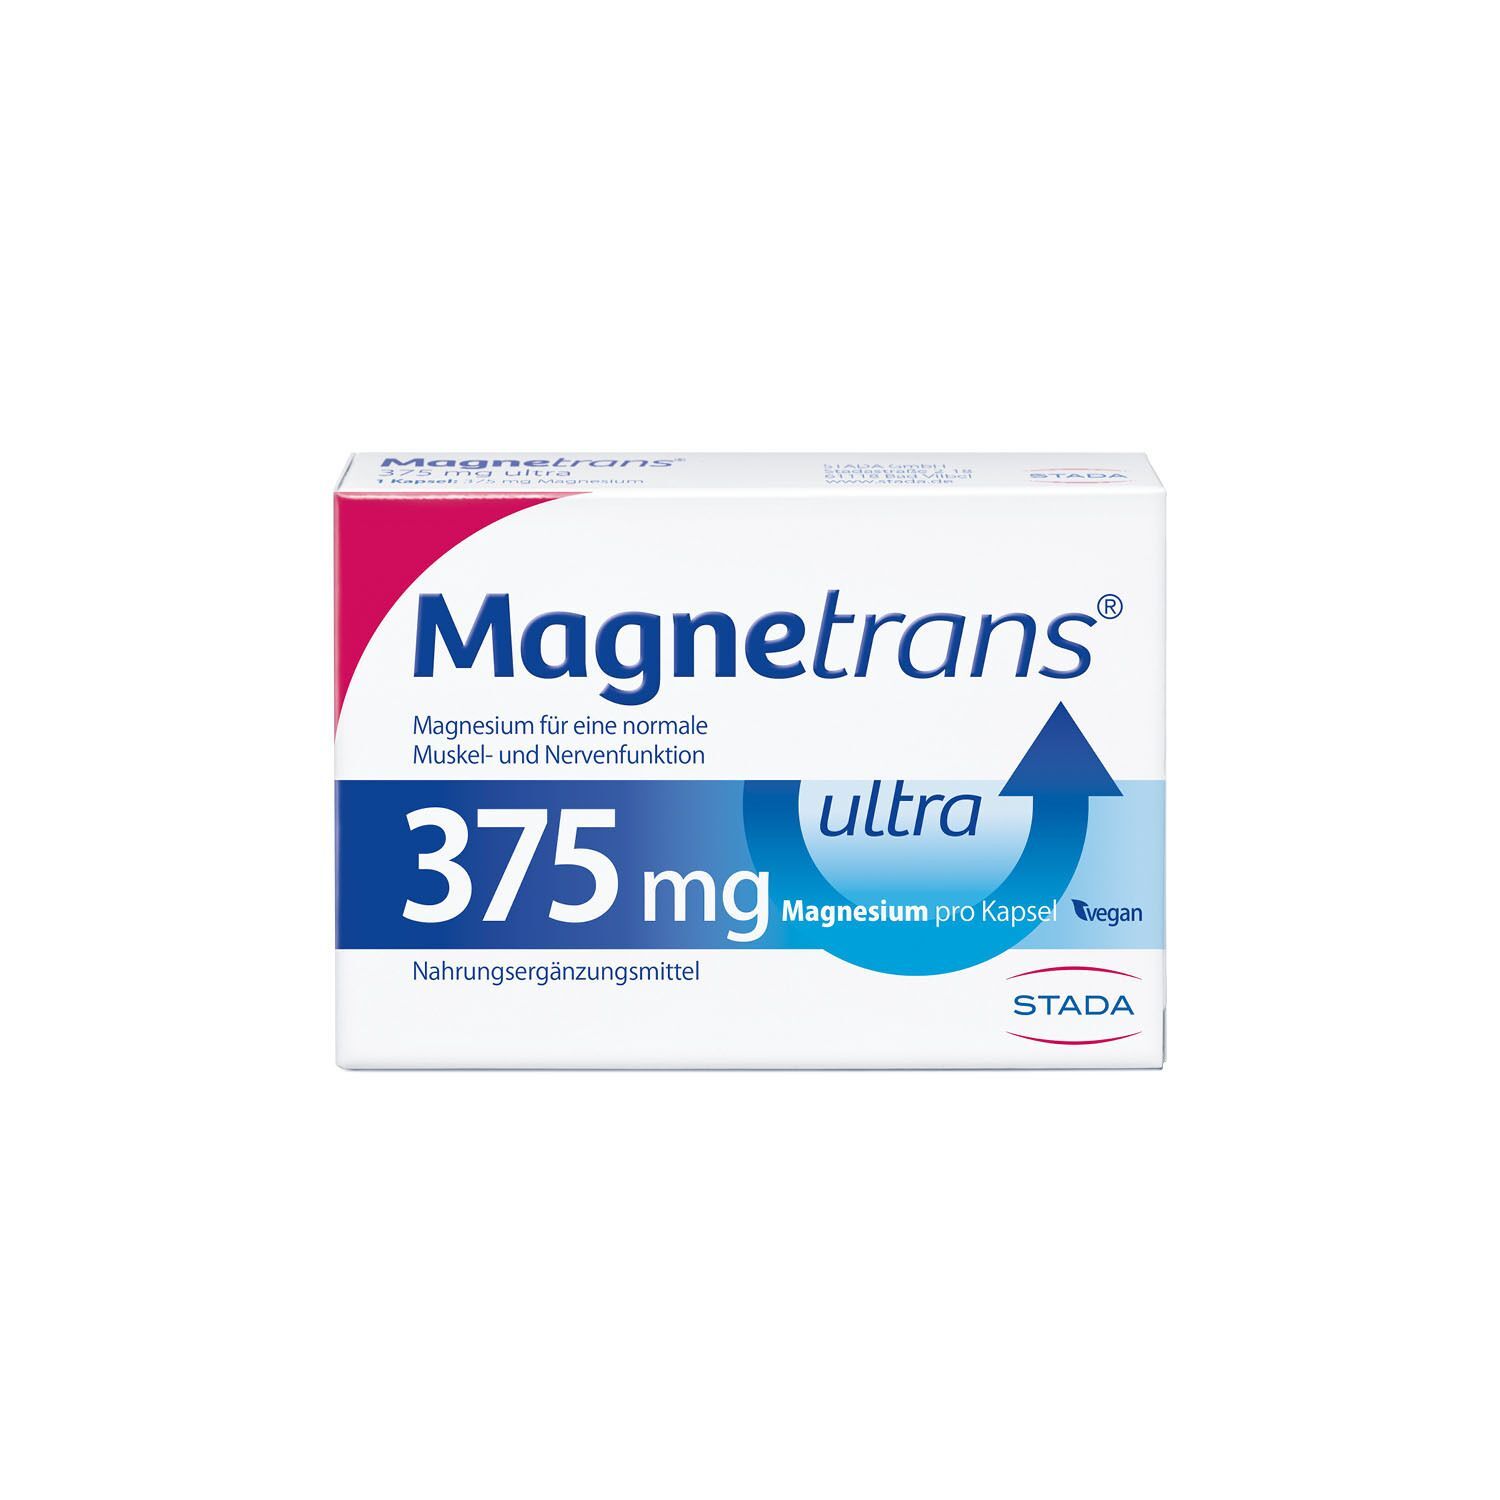 Magnetrans® 375 mg ultra